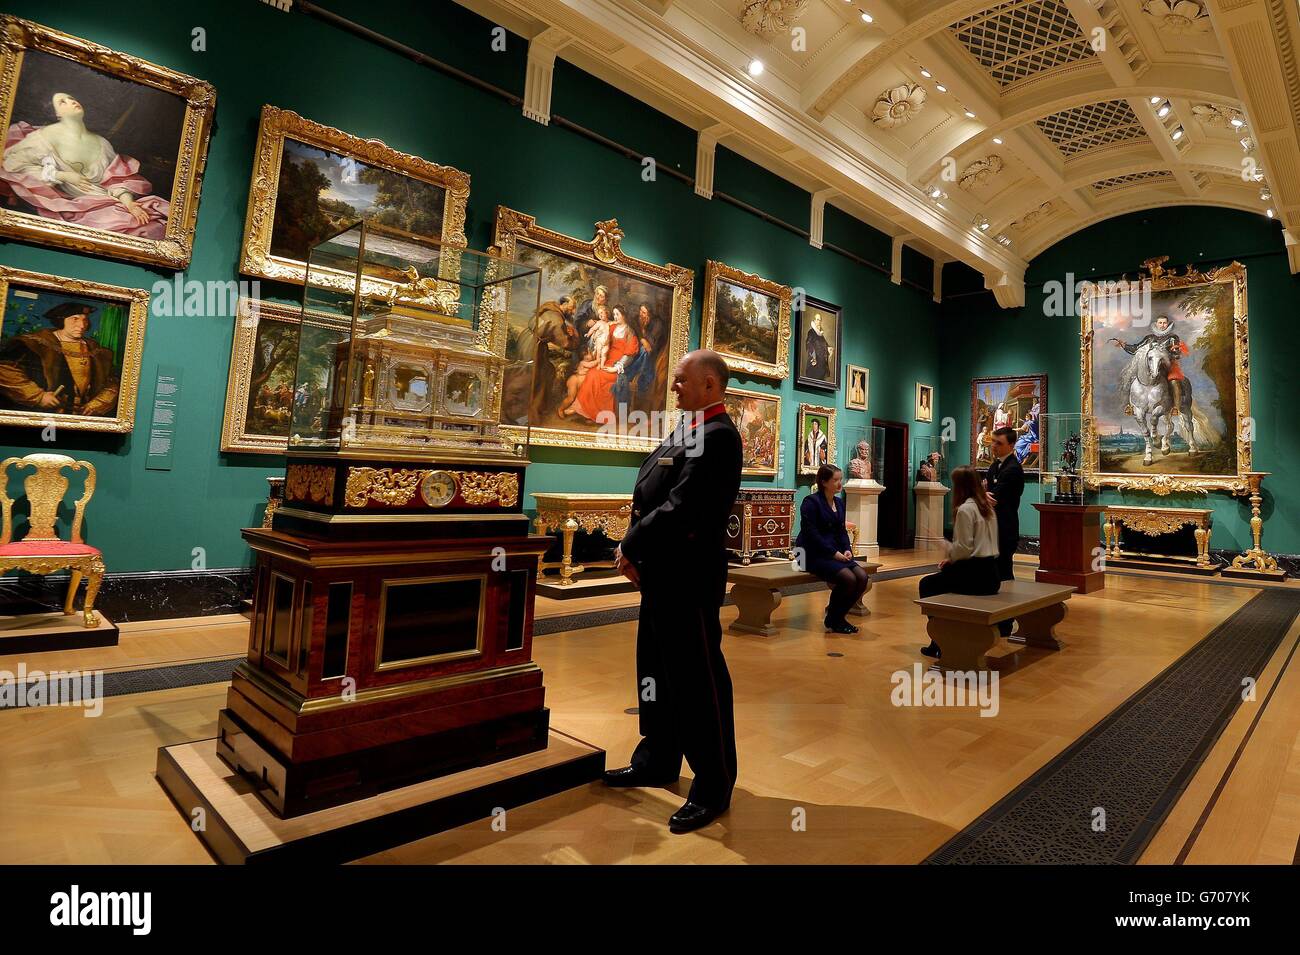 Quelques-uns des tableaux et objets exposés dans l'exposition les premiers Géorgiens: Art et monarchie 1714-1760 à la Queen's Gallery de Buckingham Palace dans le centre de Londres. Banque D'Images